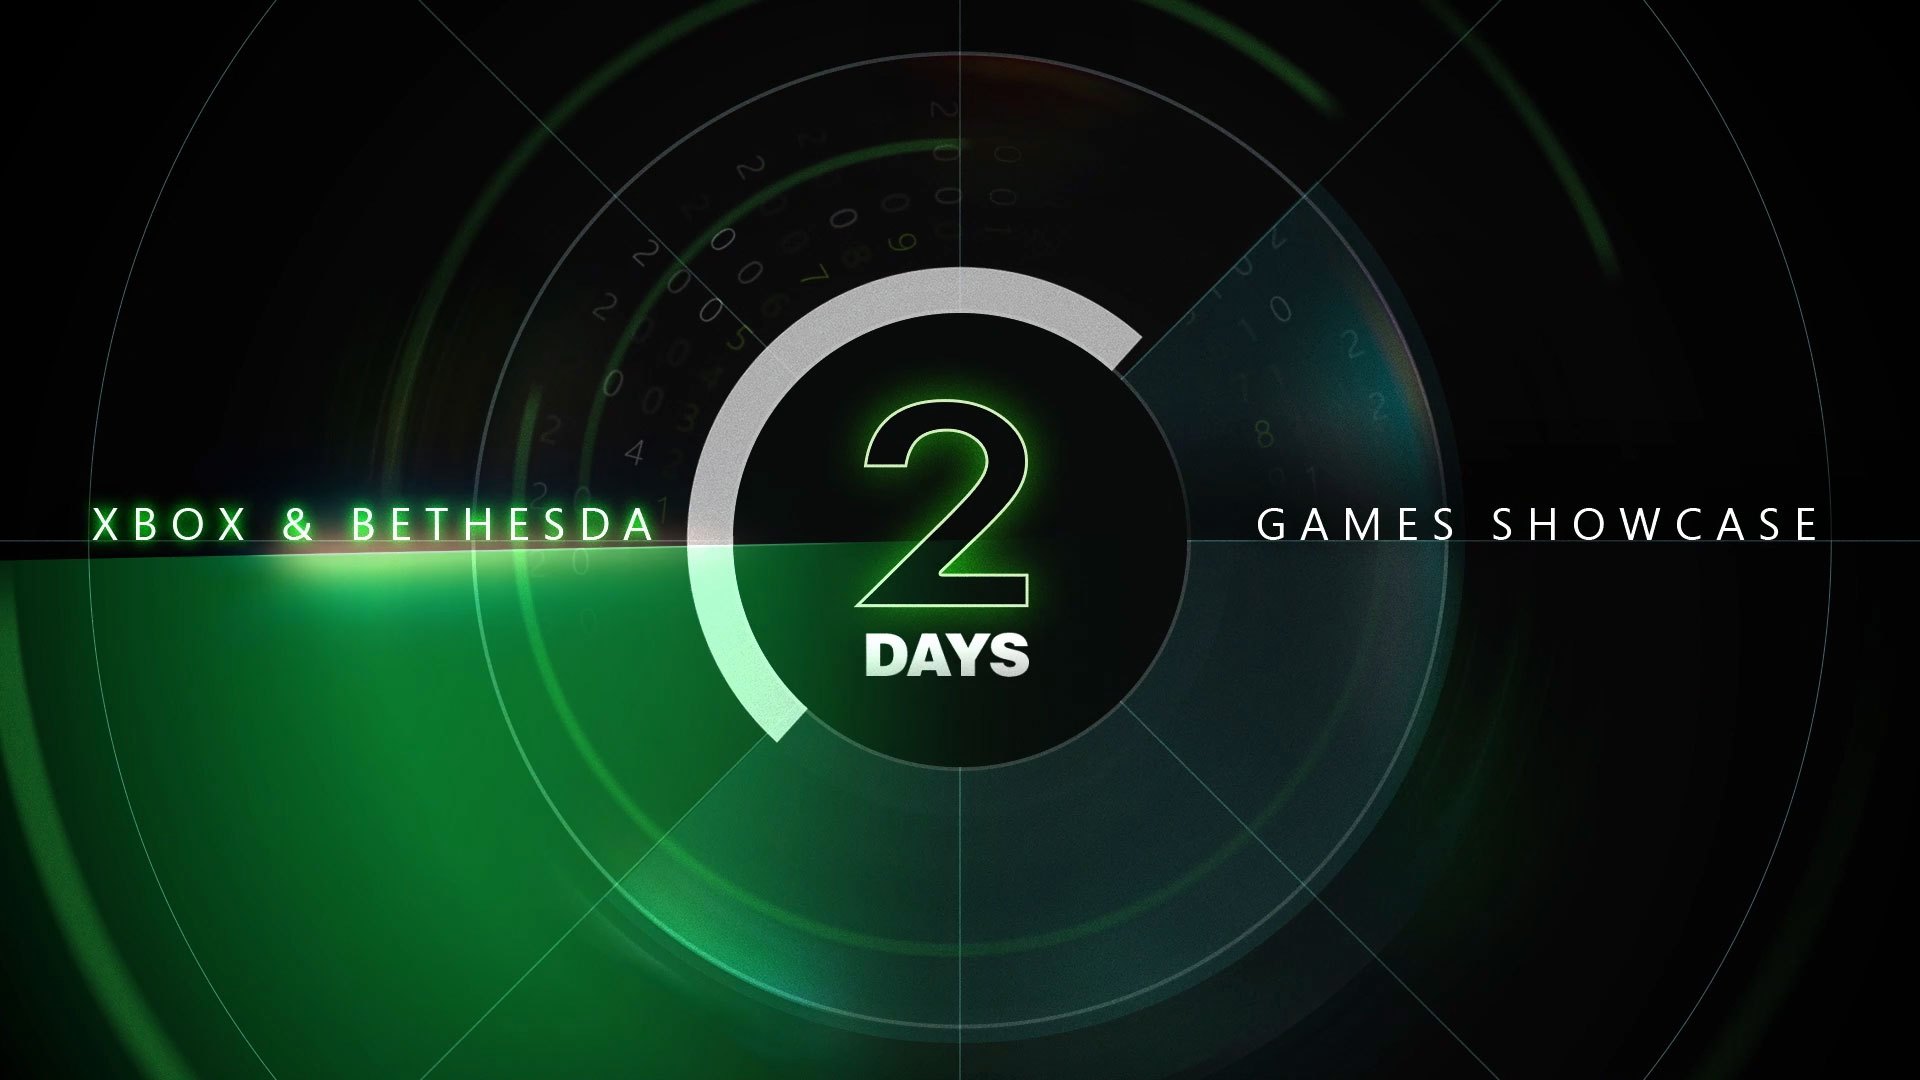 Comment suivre le Xbox & Bethesda Games Showcase